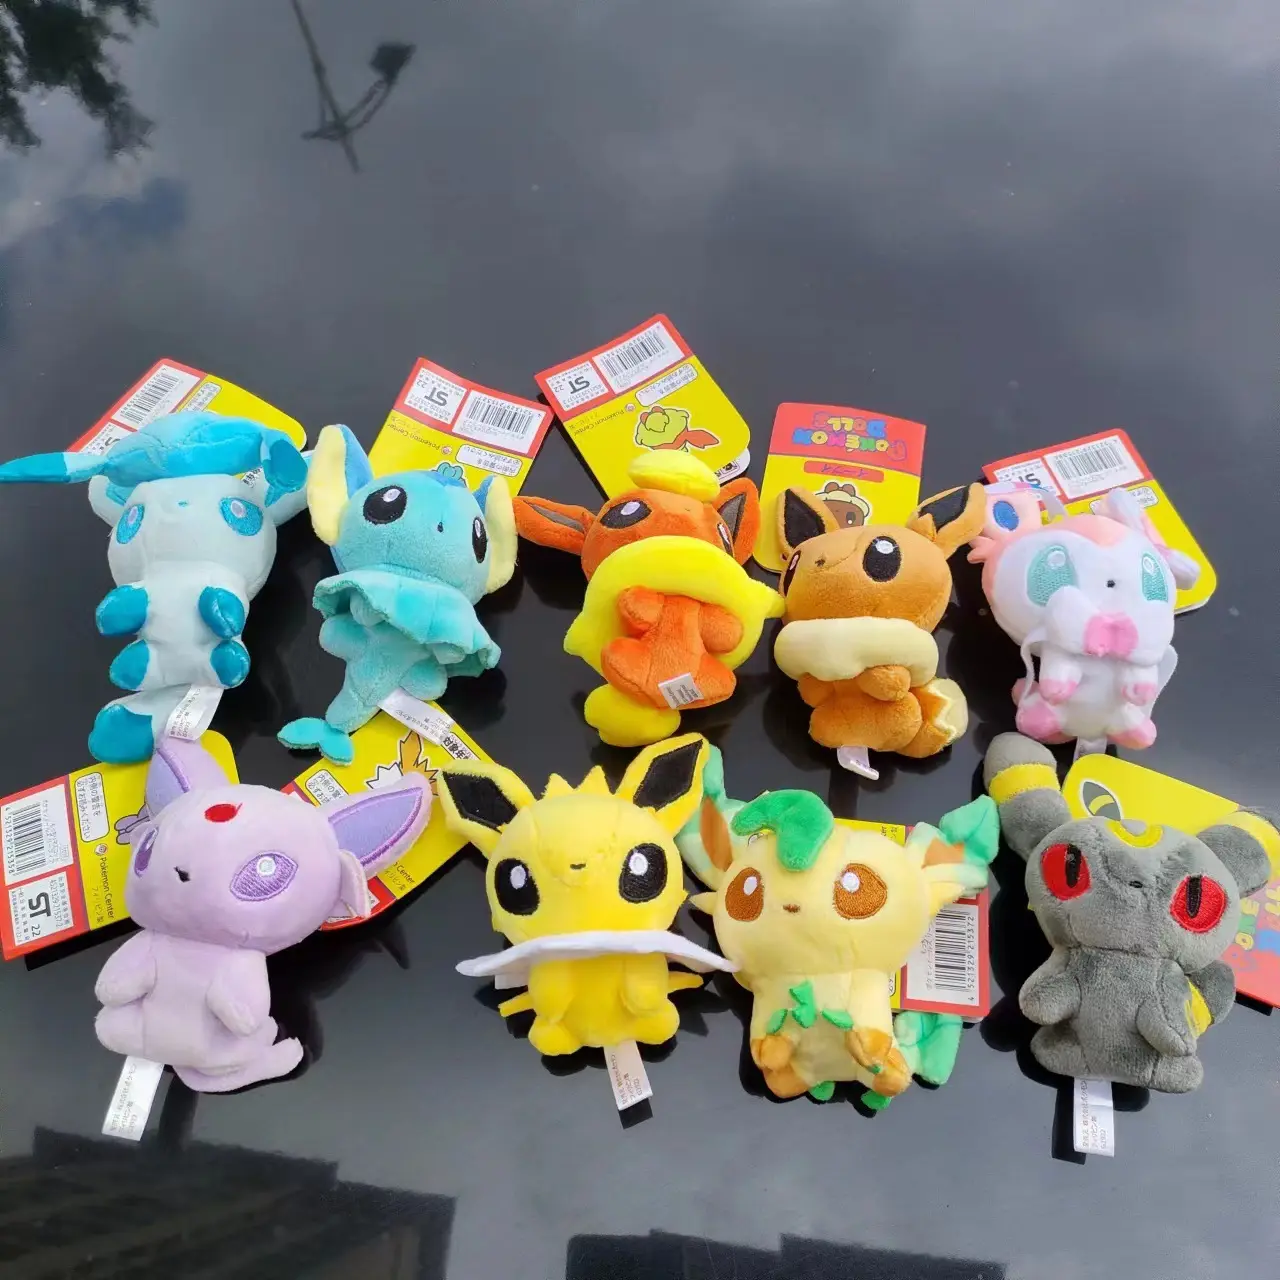 HL Spot atacado chaveiro de pelúcia Poke Moned pingente de anime bonito de 10 cm Pikachu brinquedo de pelúcia